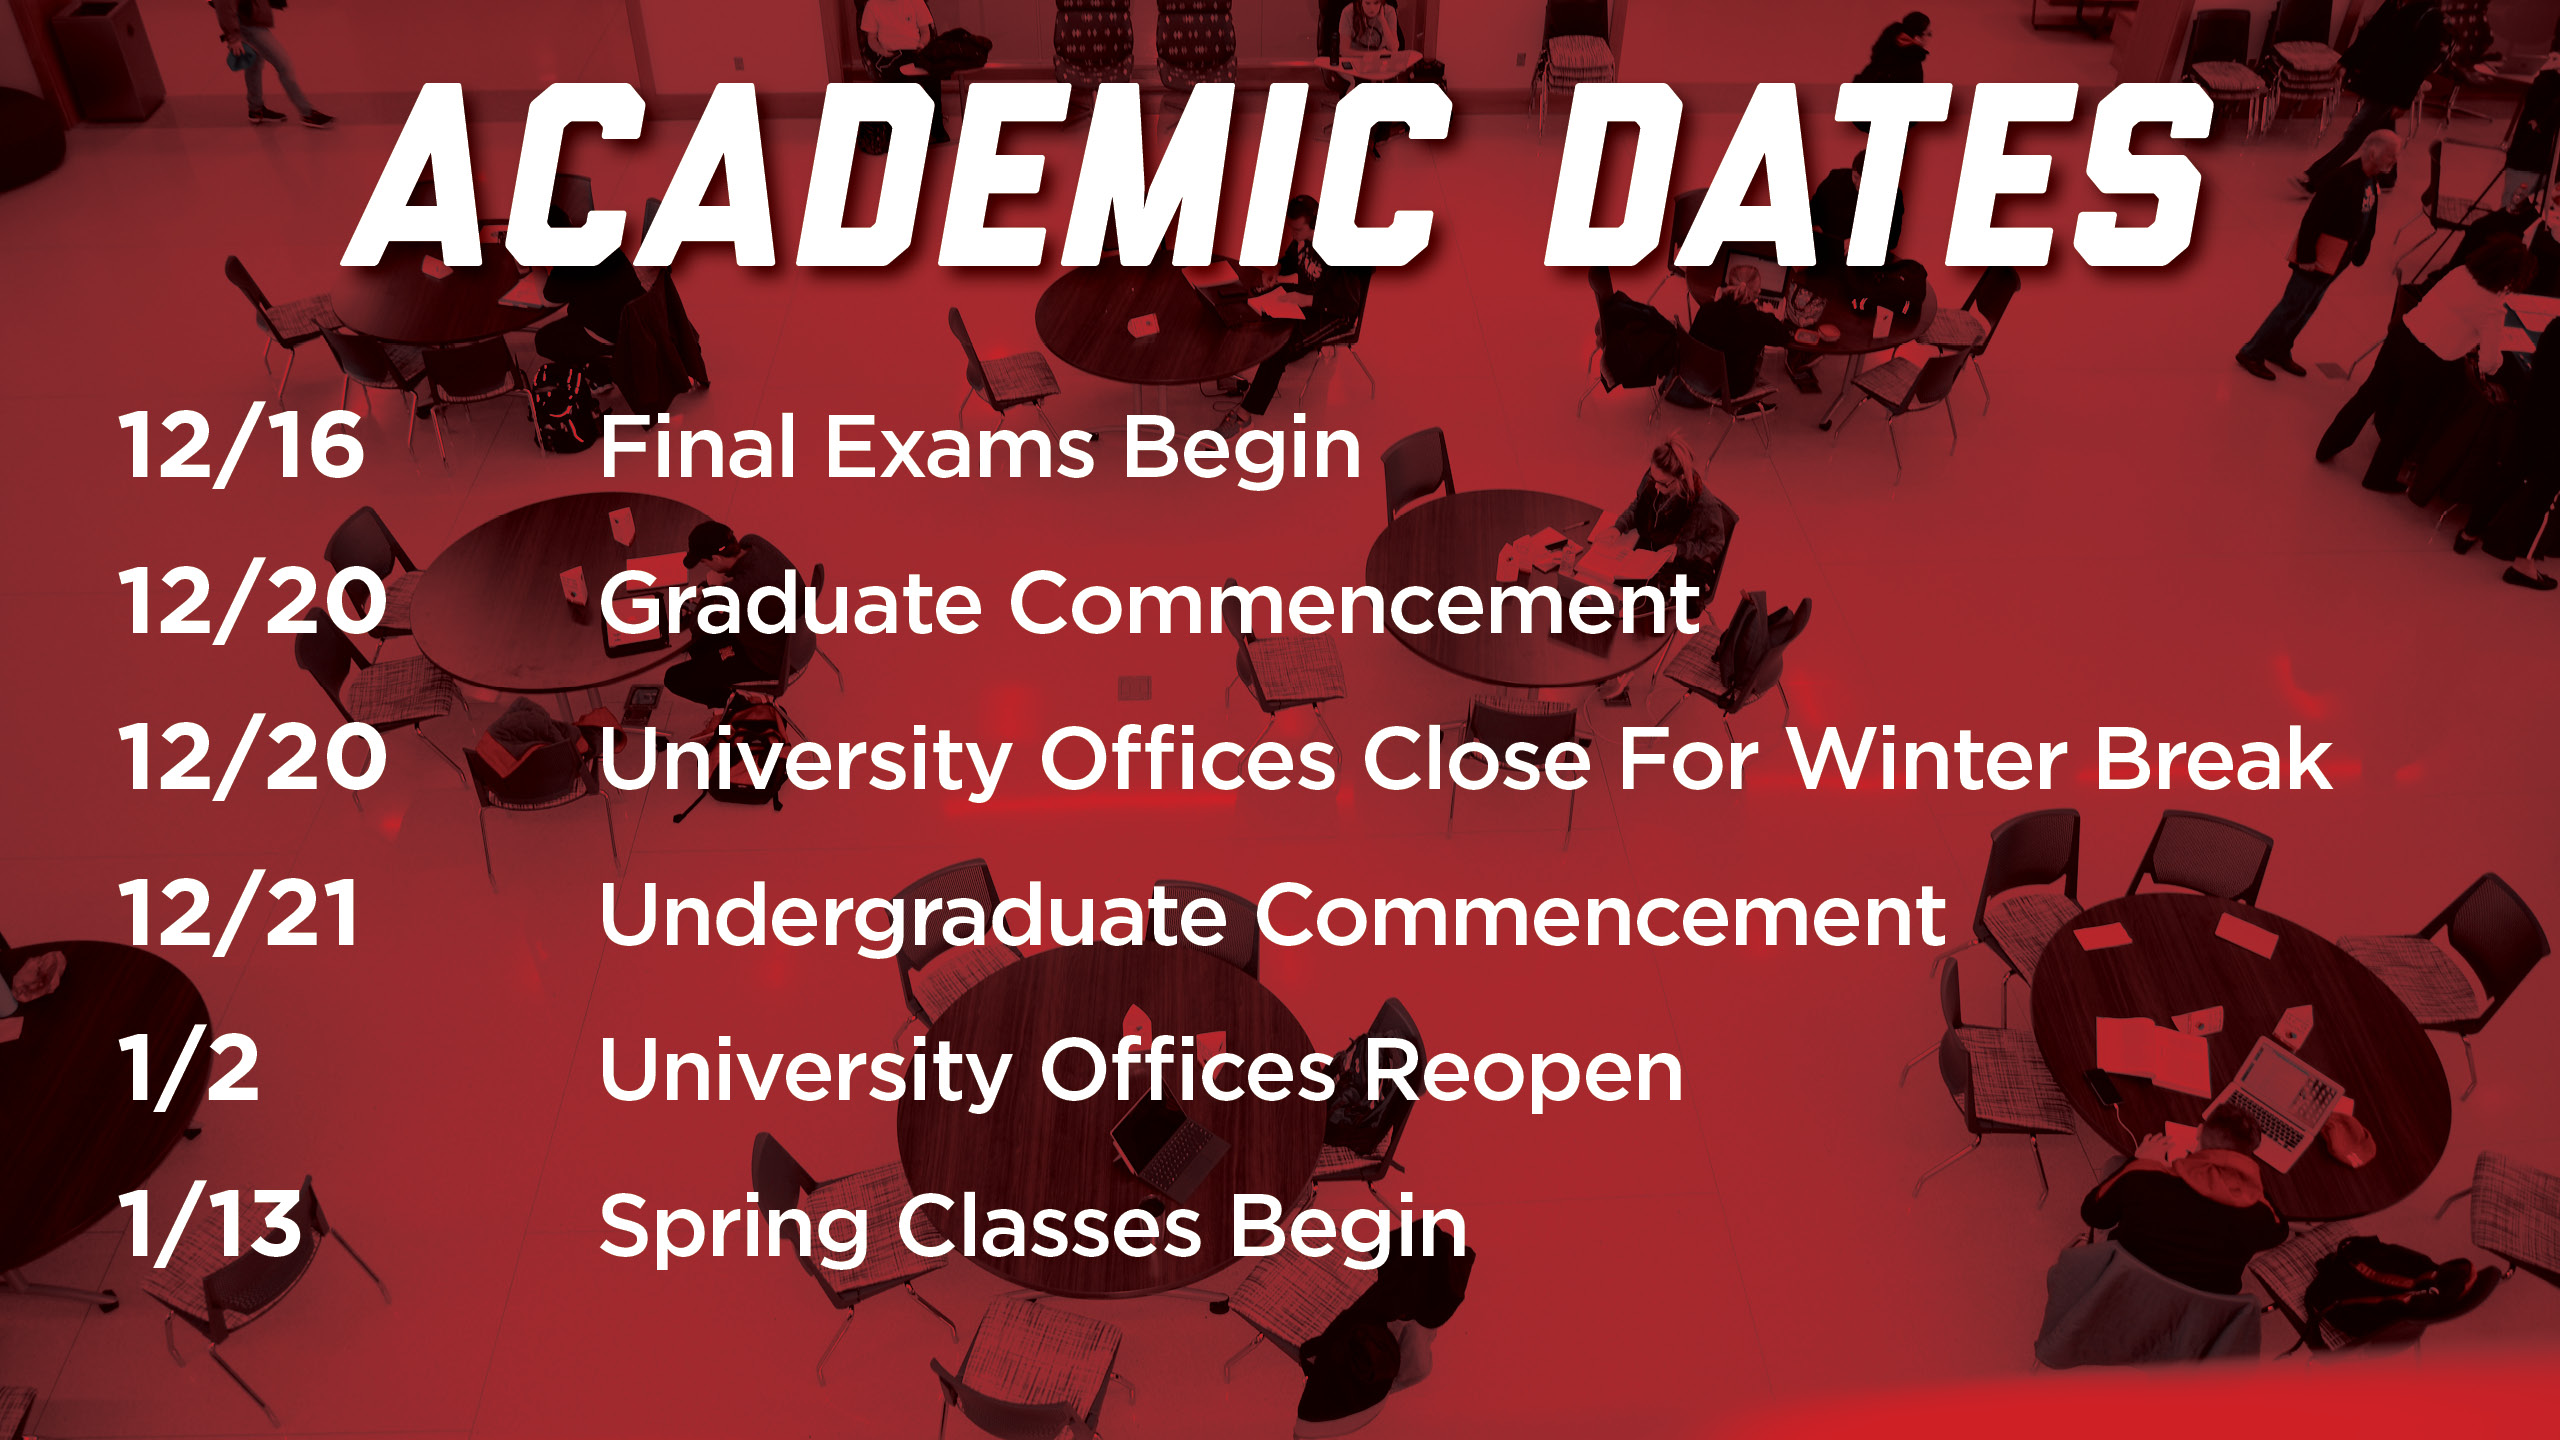 Academic Dates Announce University of Nebraska Lincoln